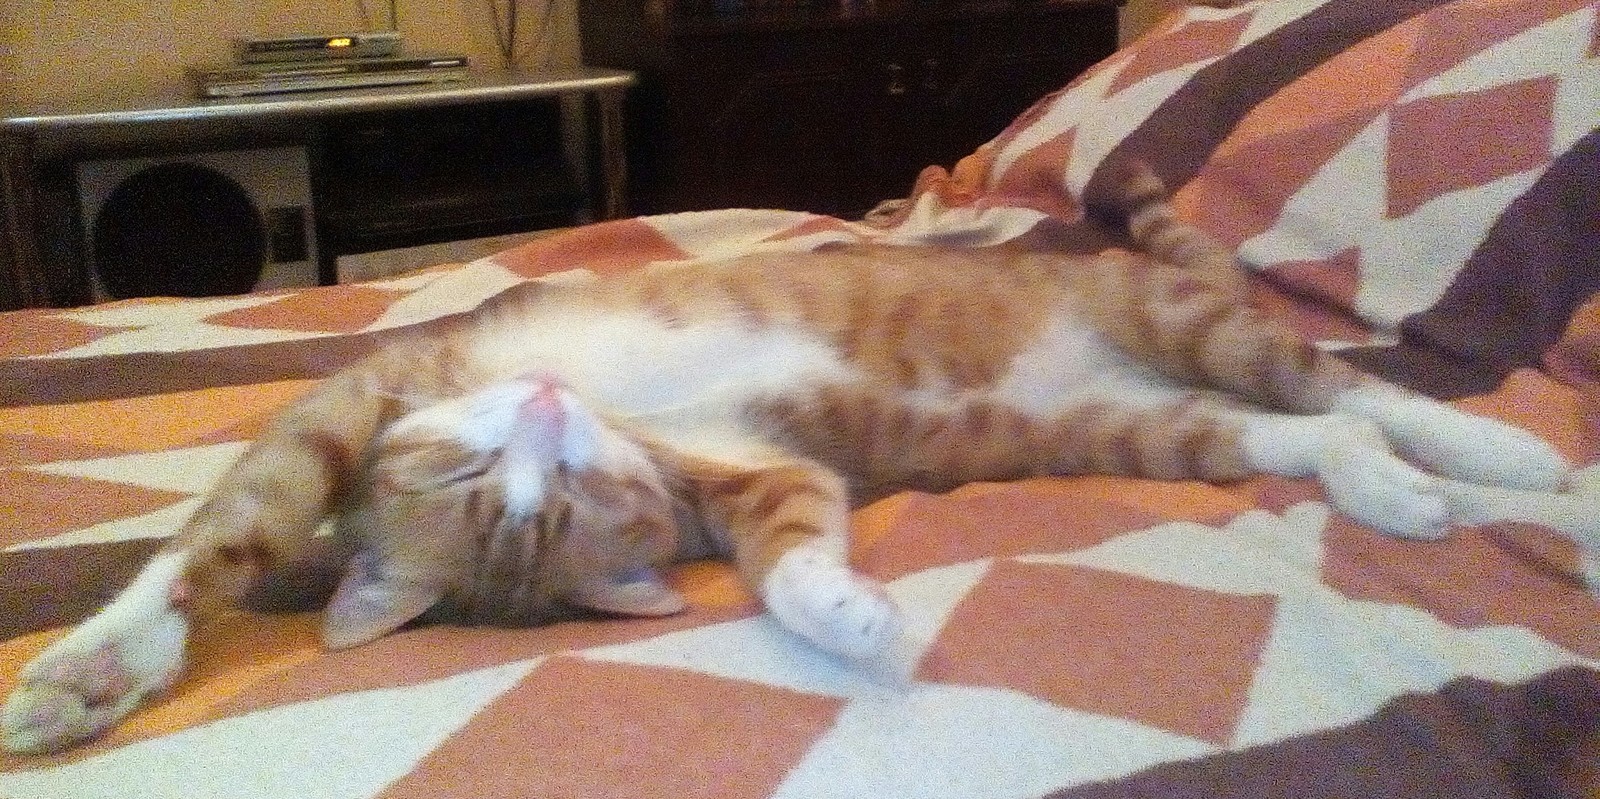 Всегда удивляюсь, как коты спят)) и удобно же ведь | Пикабу